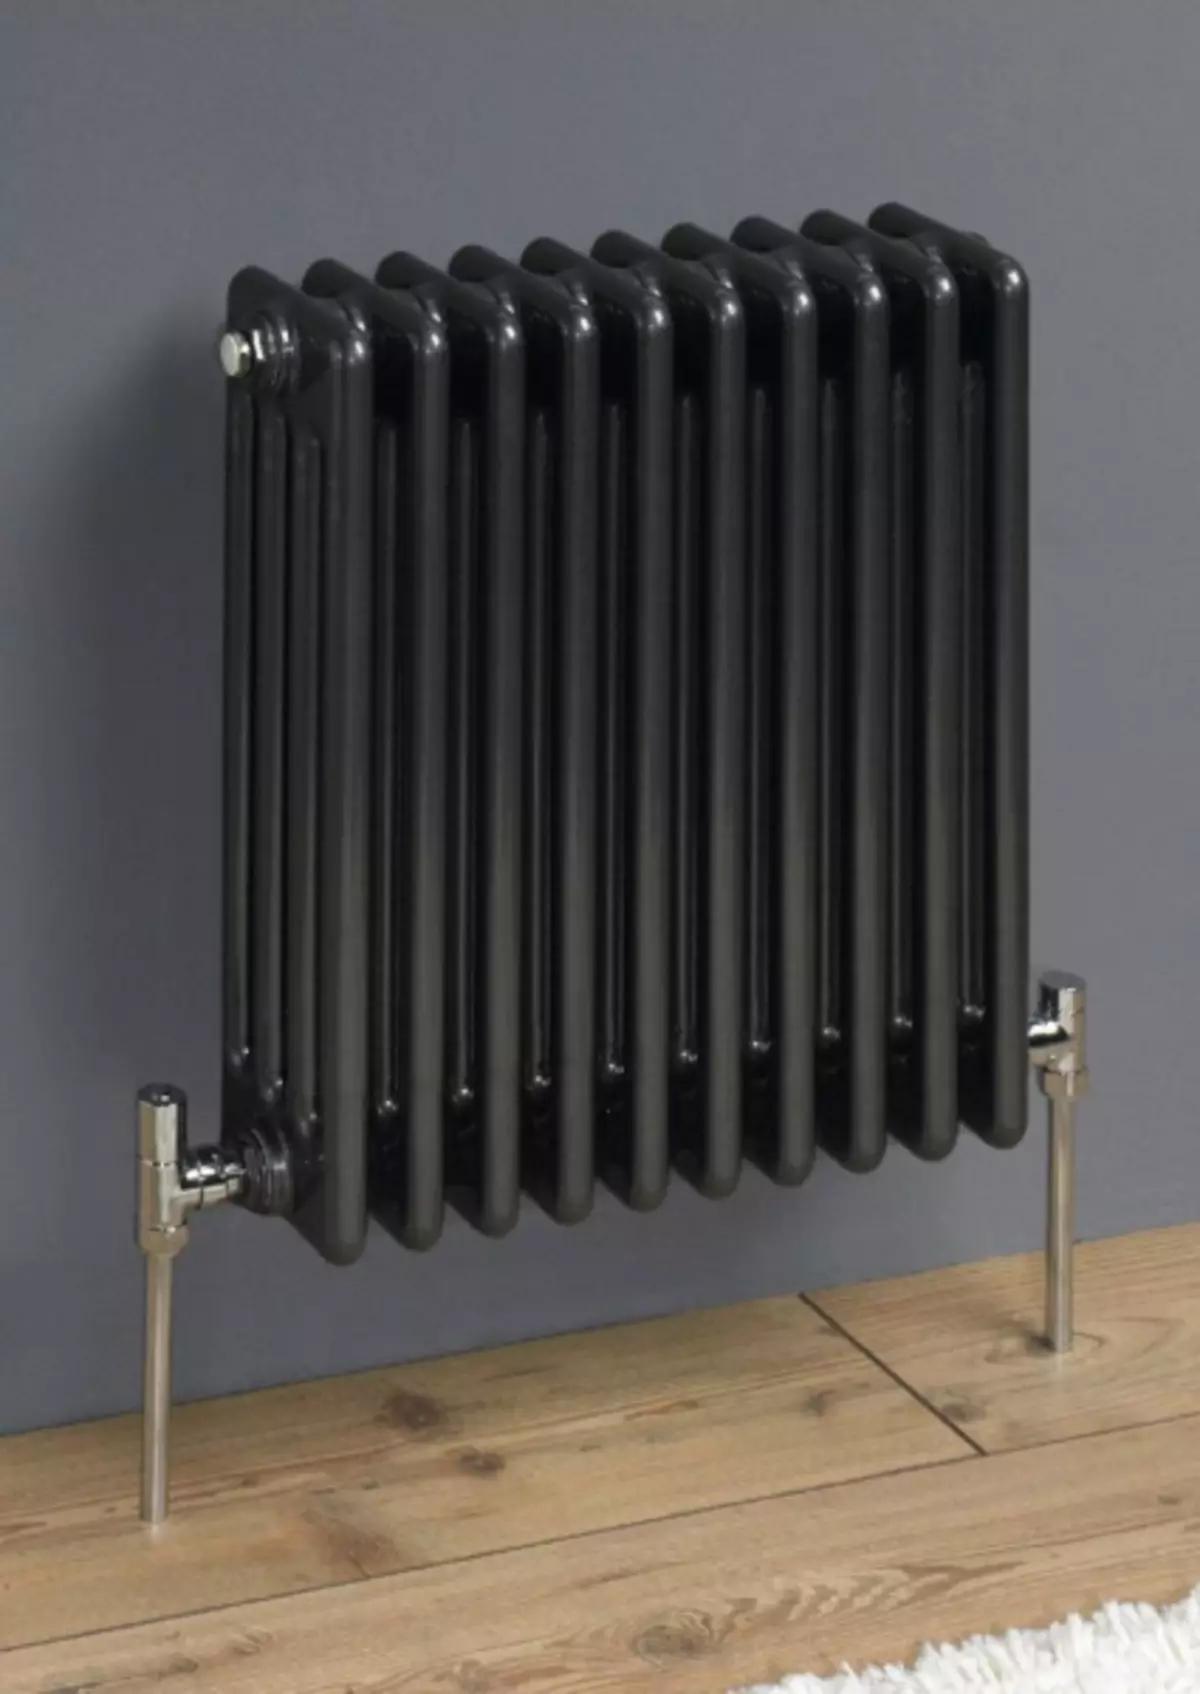 Sistemi i kombinuar i ngrohjes: radiatorë dhe dysheme të ngrohtë, skemë